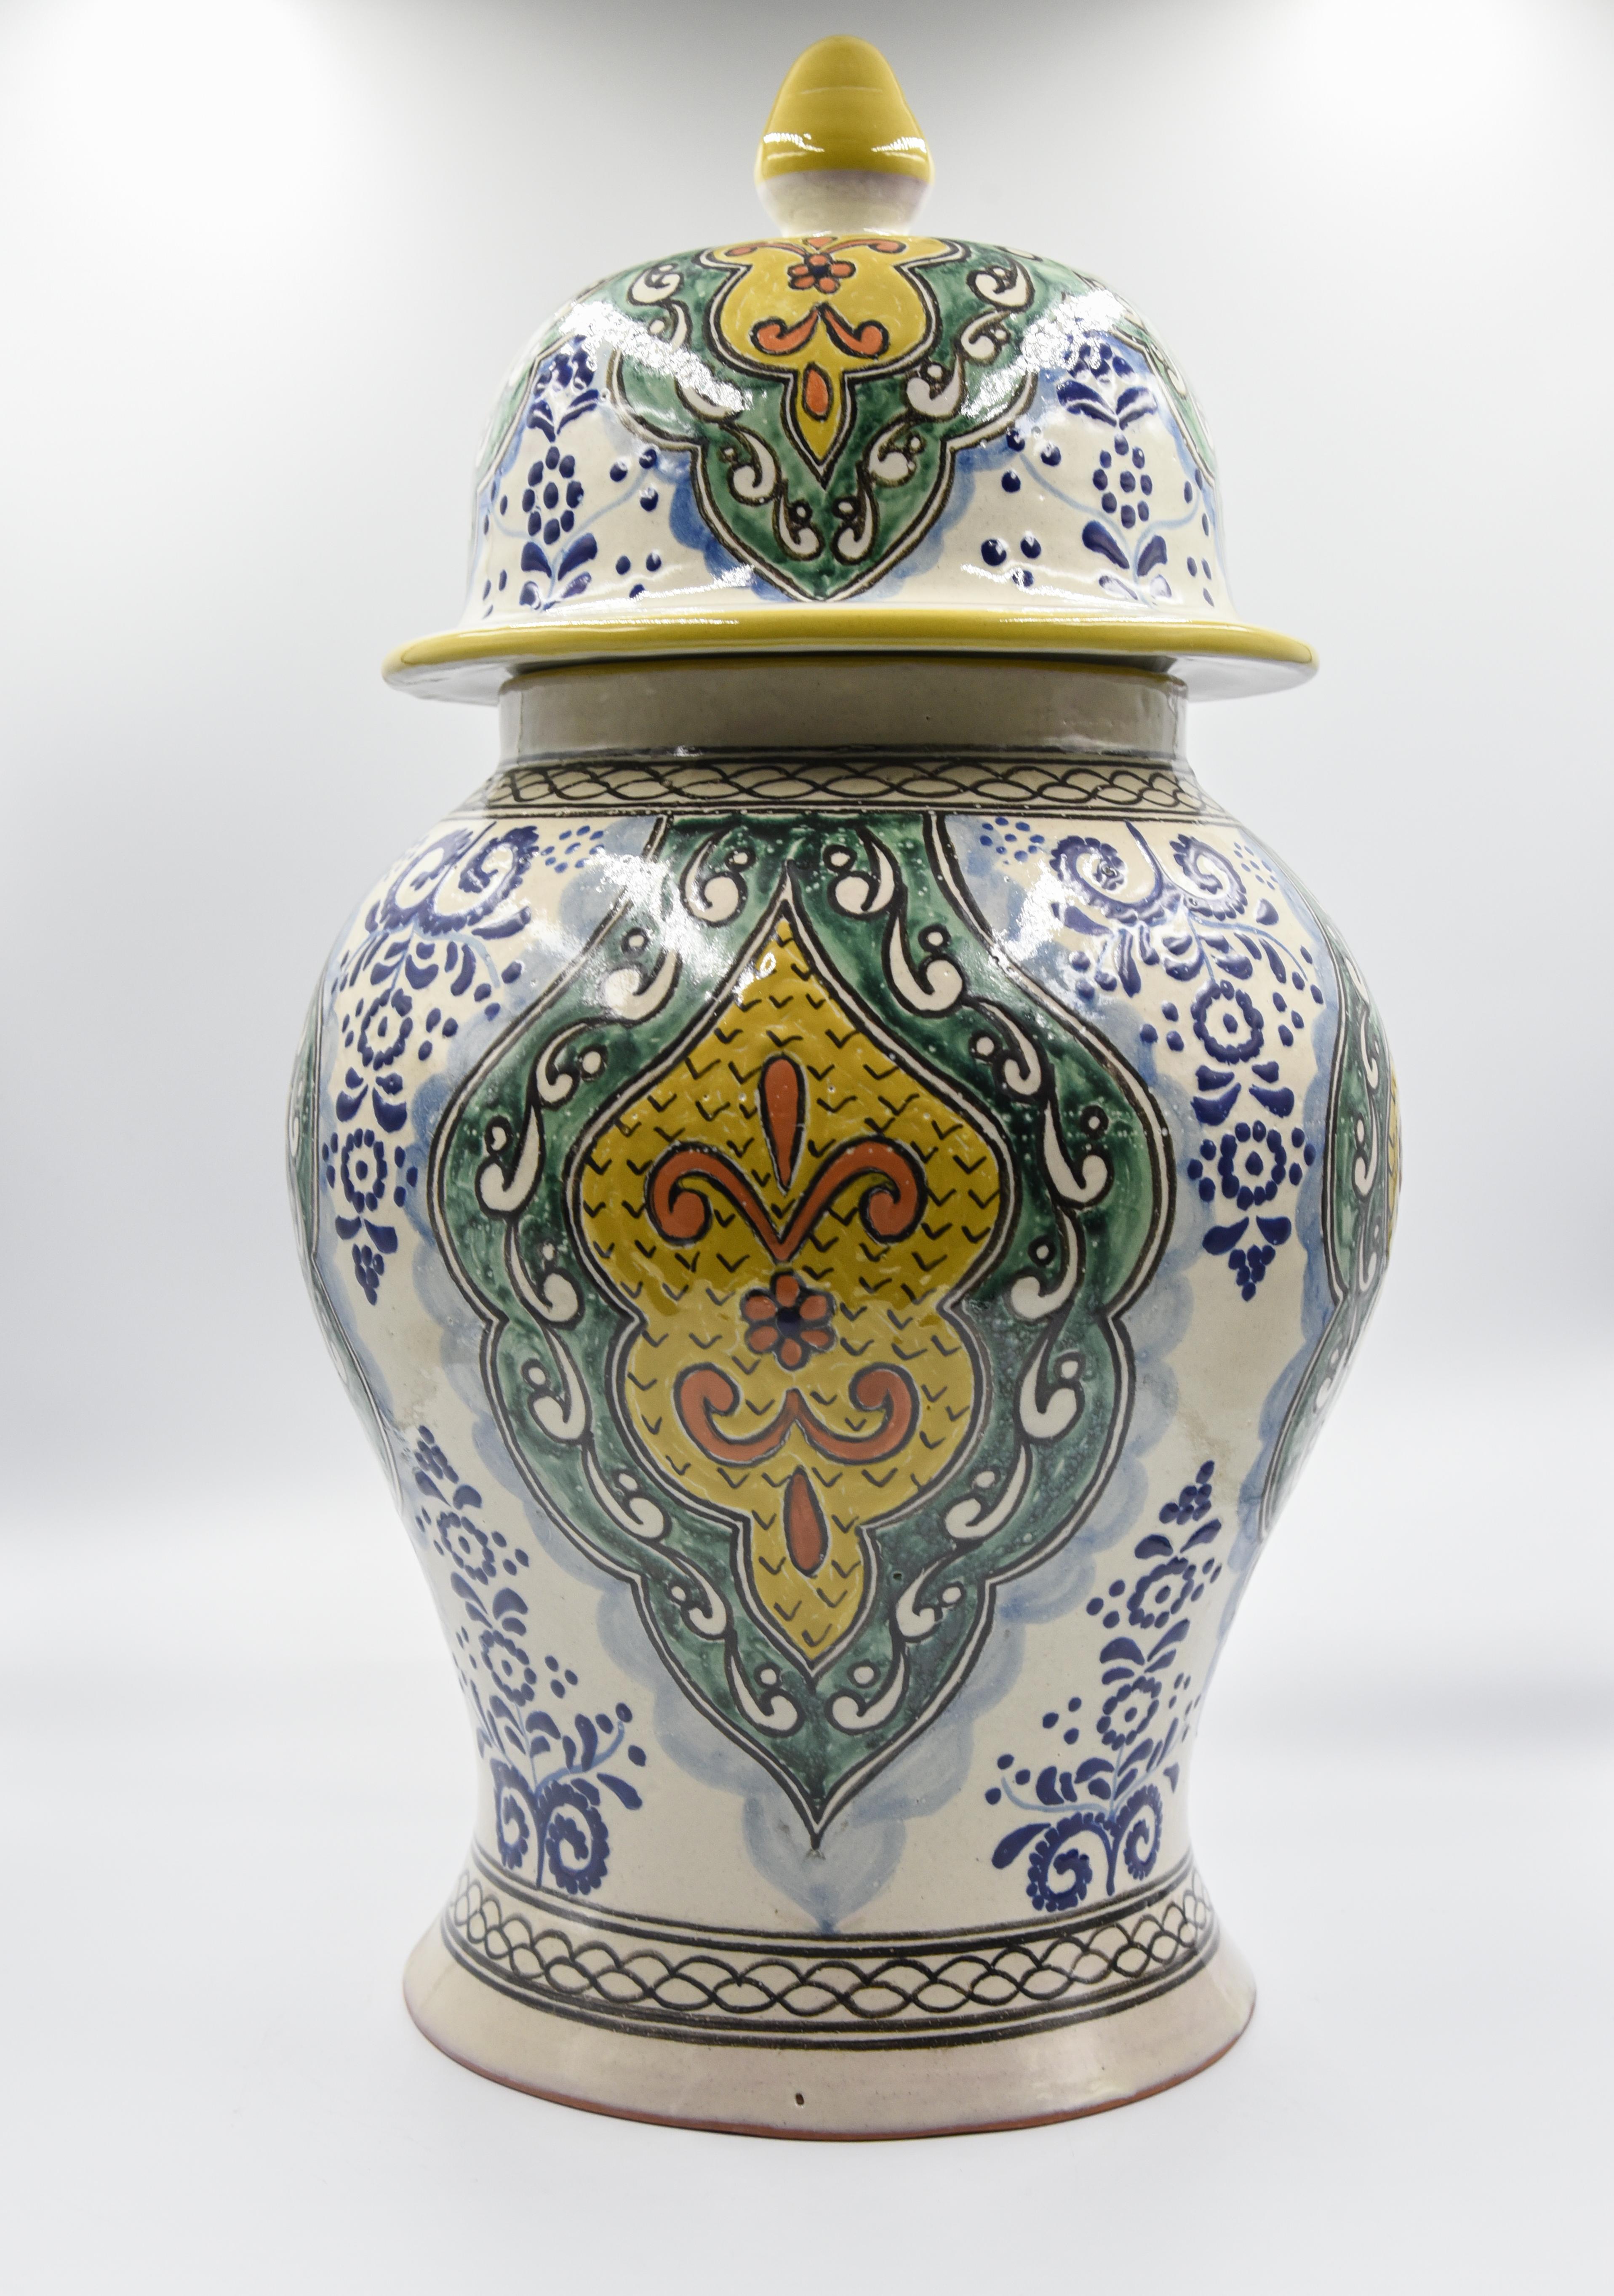 Diese beeindruckende:: einzigartige Vase ist ein wahrer Vertreter des Werks von Cesar Torres. Diese schöne Vasenfigur ist mit einem spitzen Deckel versehen:: wie eine traditionelle Talavera-Vase. Seine Textur und sein Design sind jedoch eine